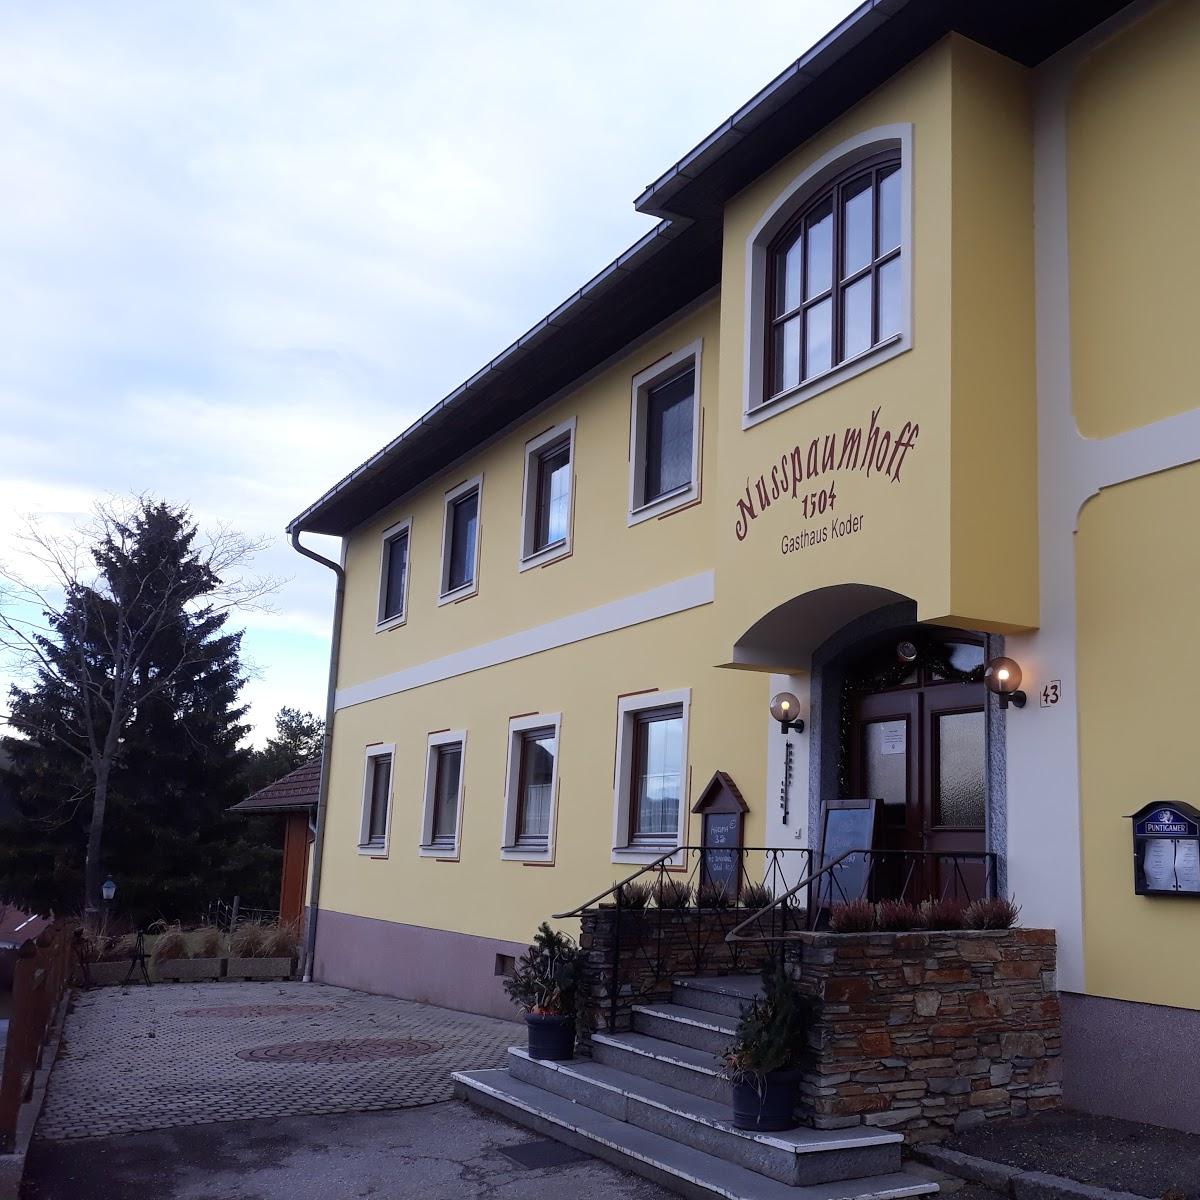 Restaurant "Gasthof Nusspaumhoff" in Bad Schönau